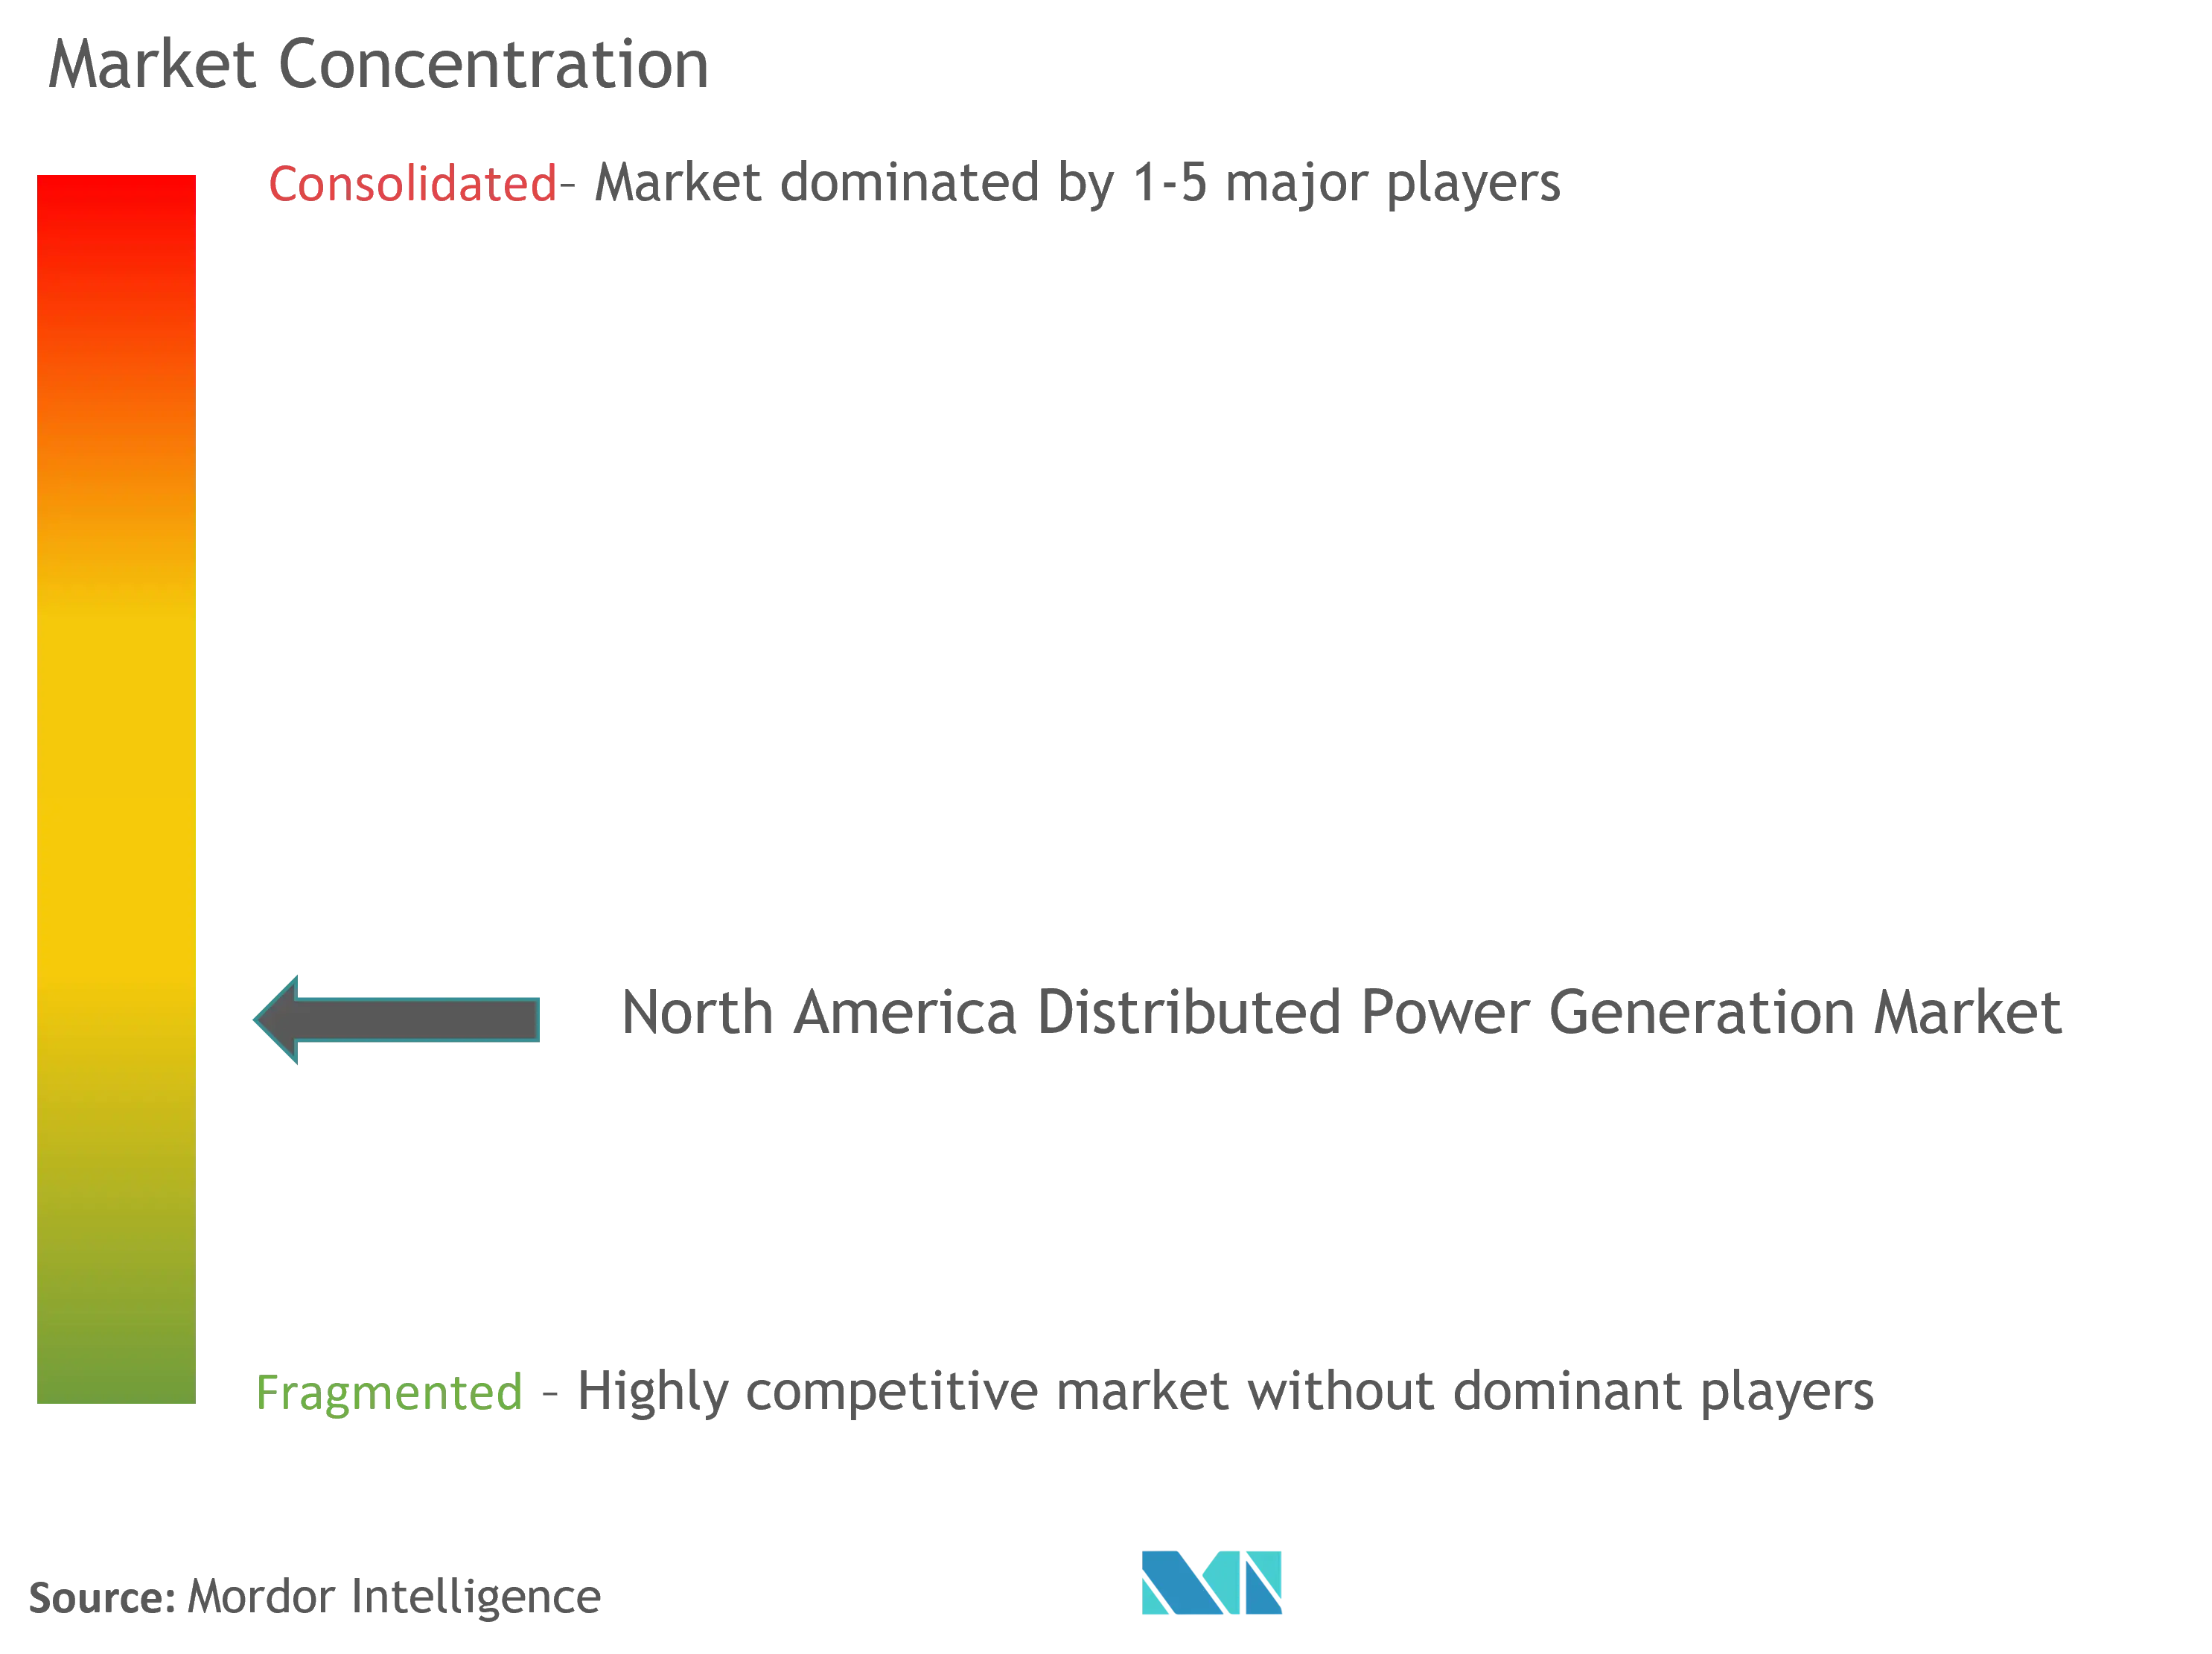 Marktkonzentration für dezentrale Stromerzeugung in Nordamerika